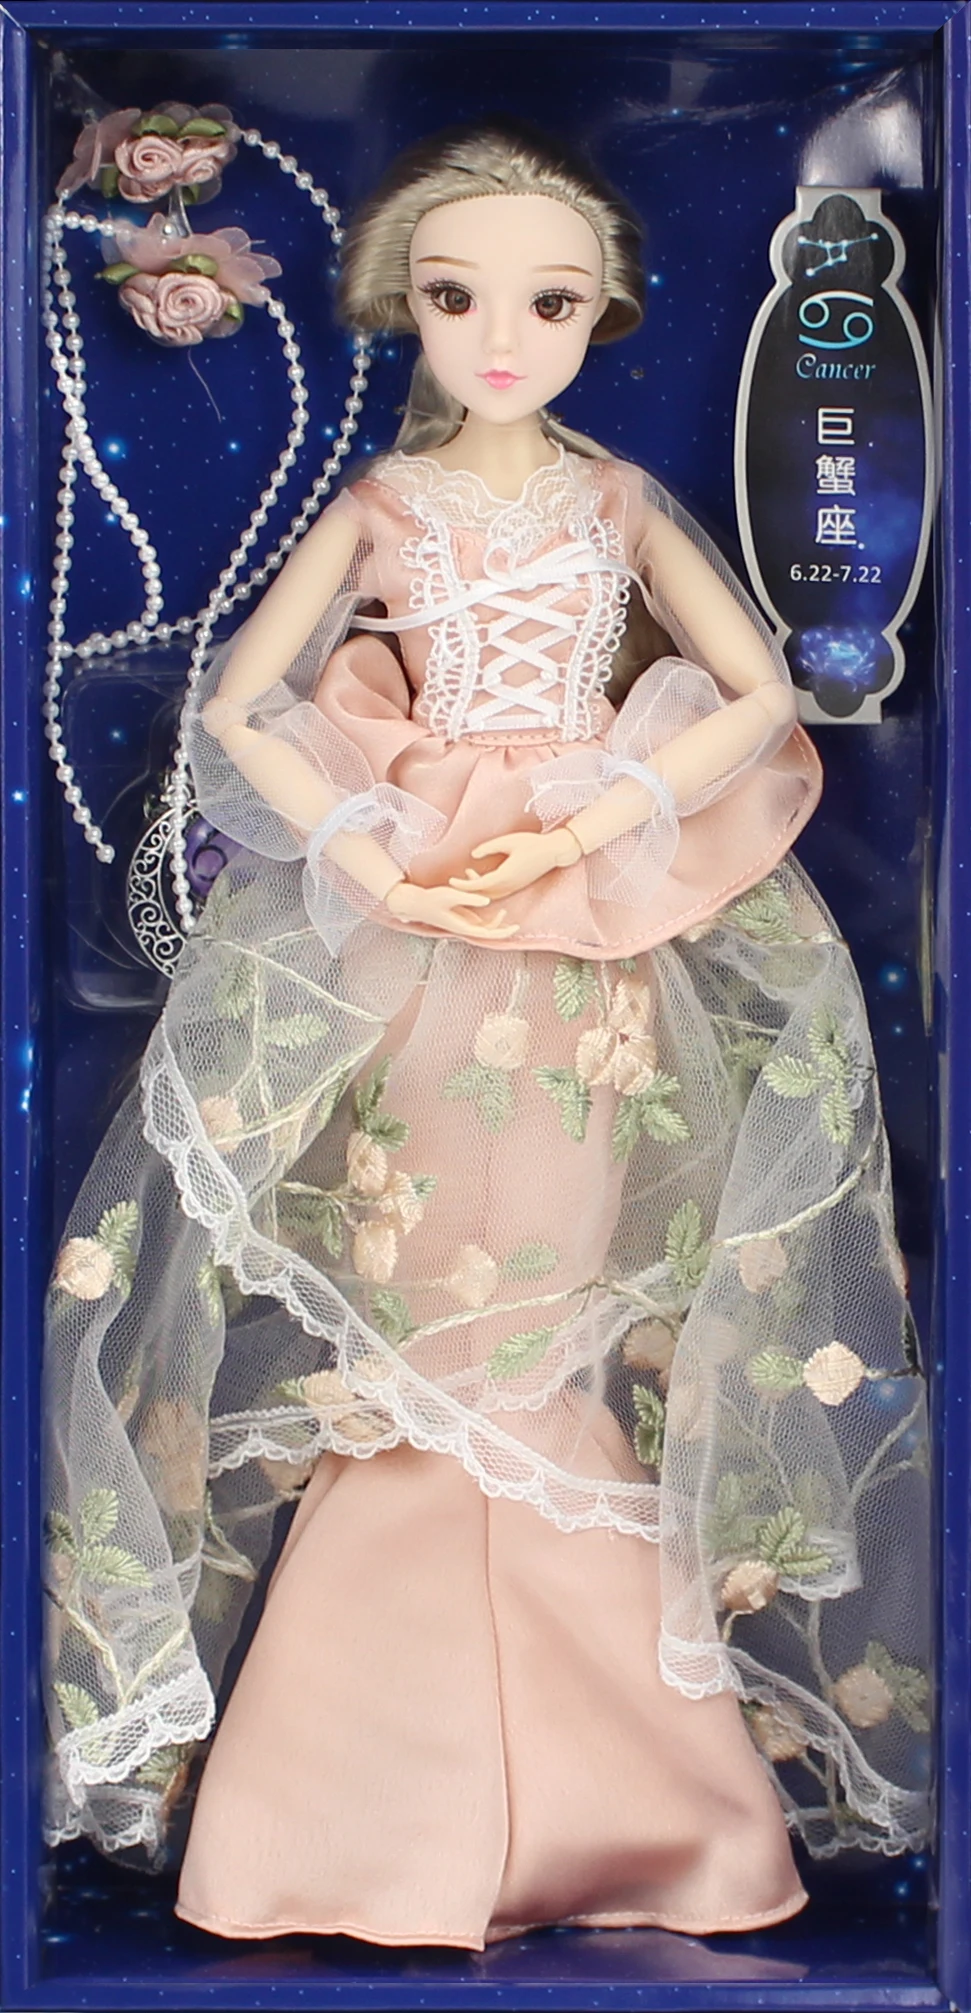 BJD кукла MMGirl РАК 12 созвездий серии 14 суставное тело с розовым кружевом платье обувь и кукла стенд